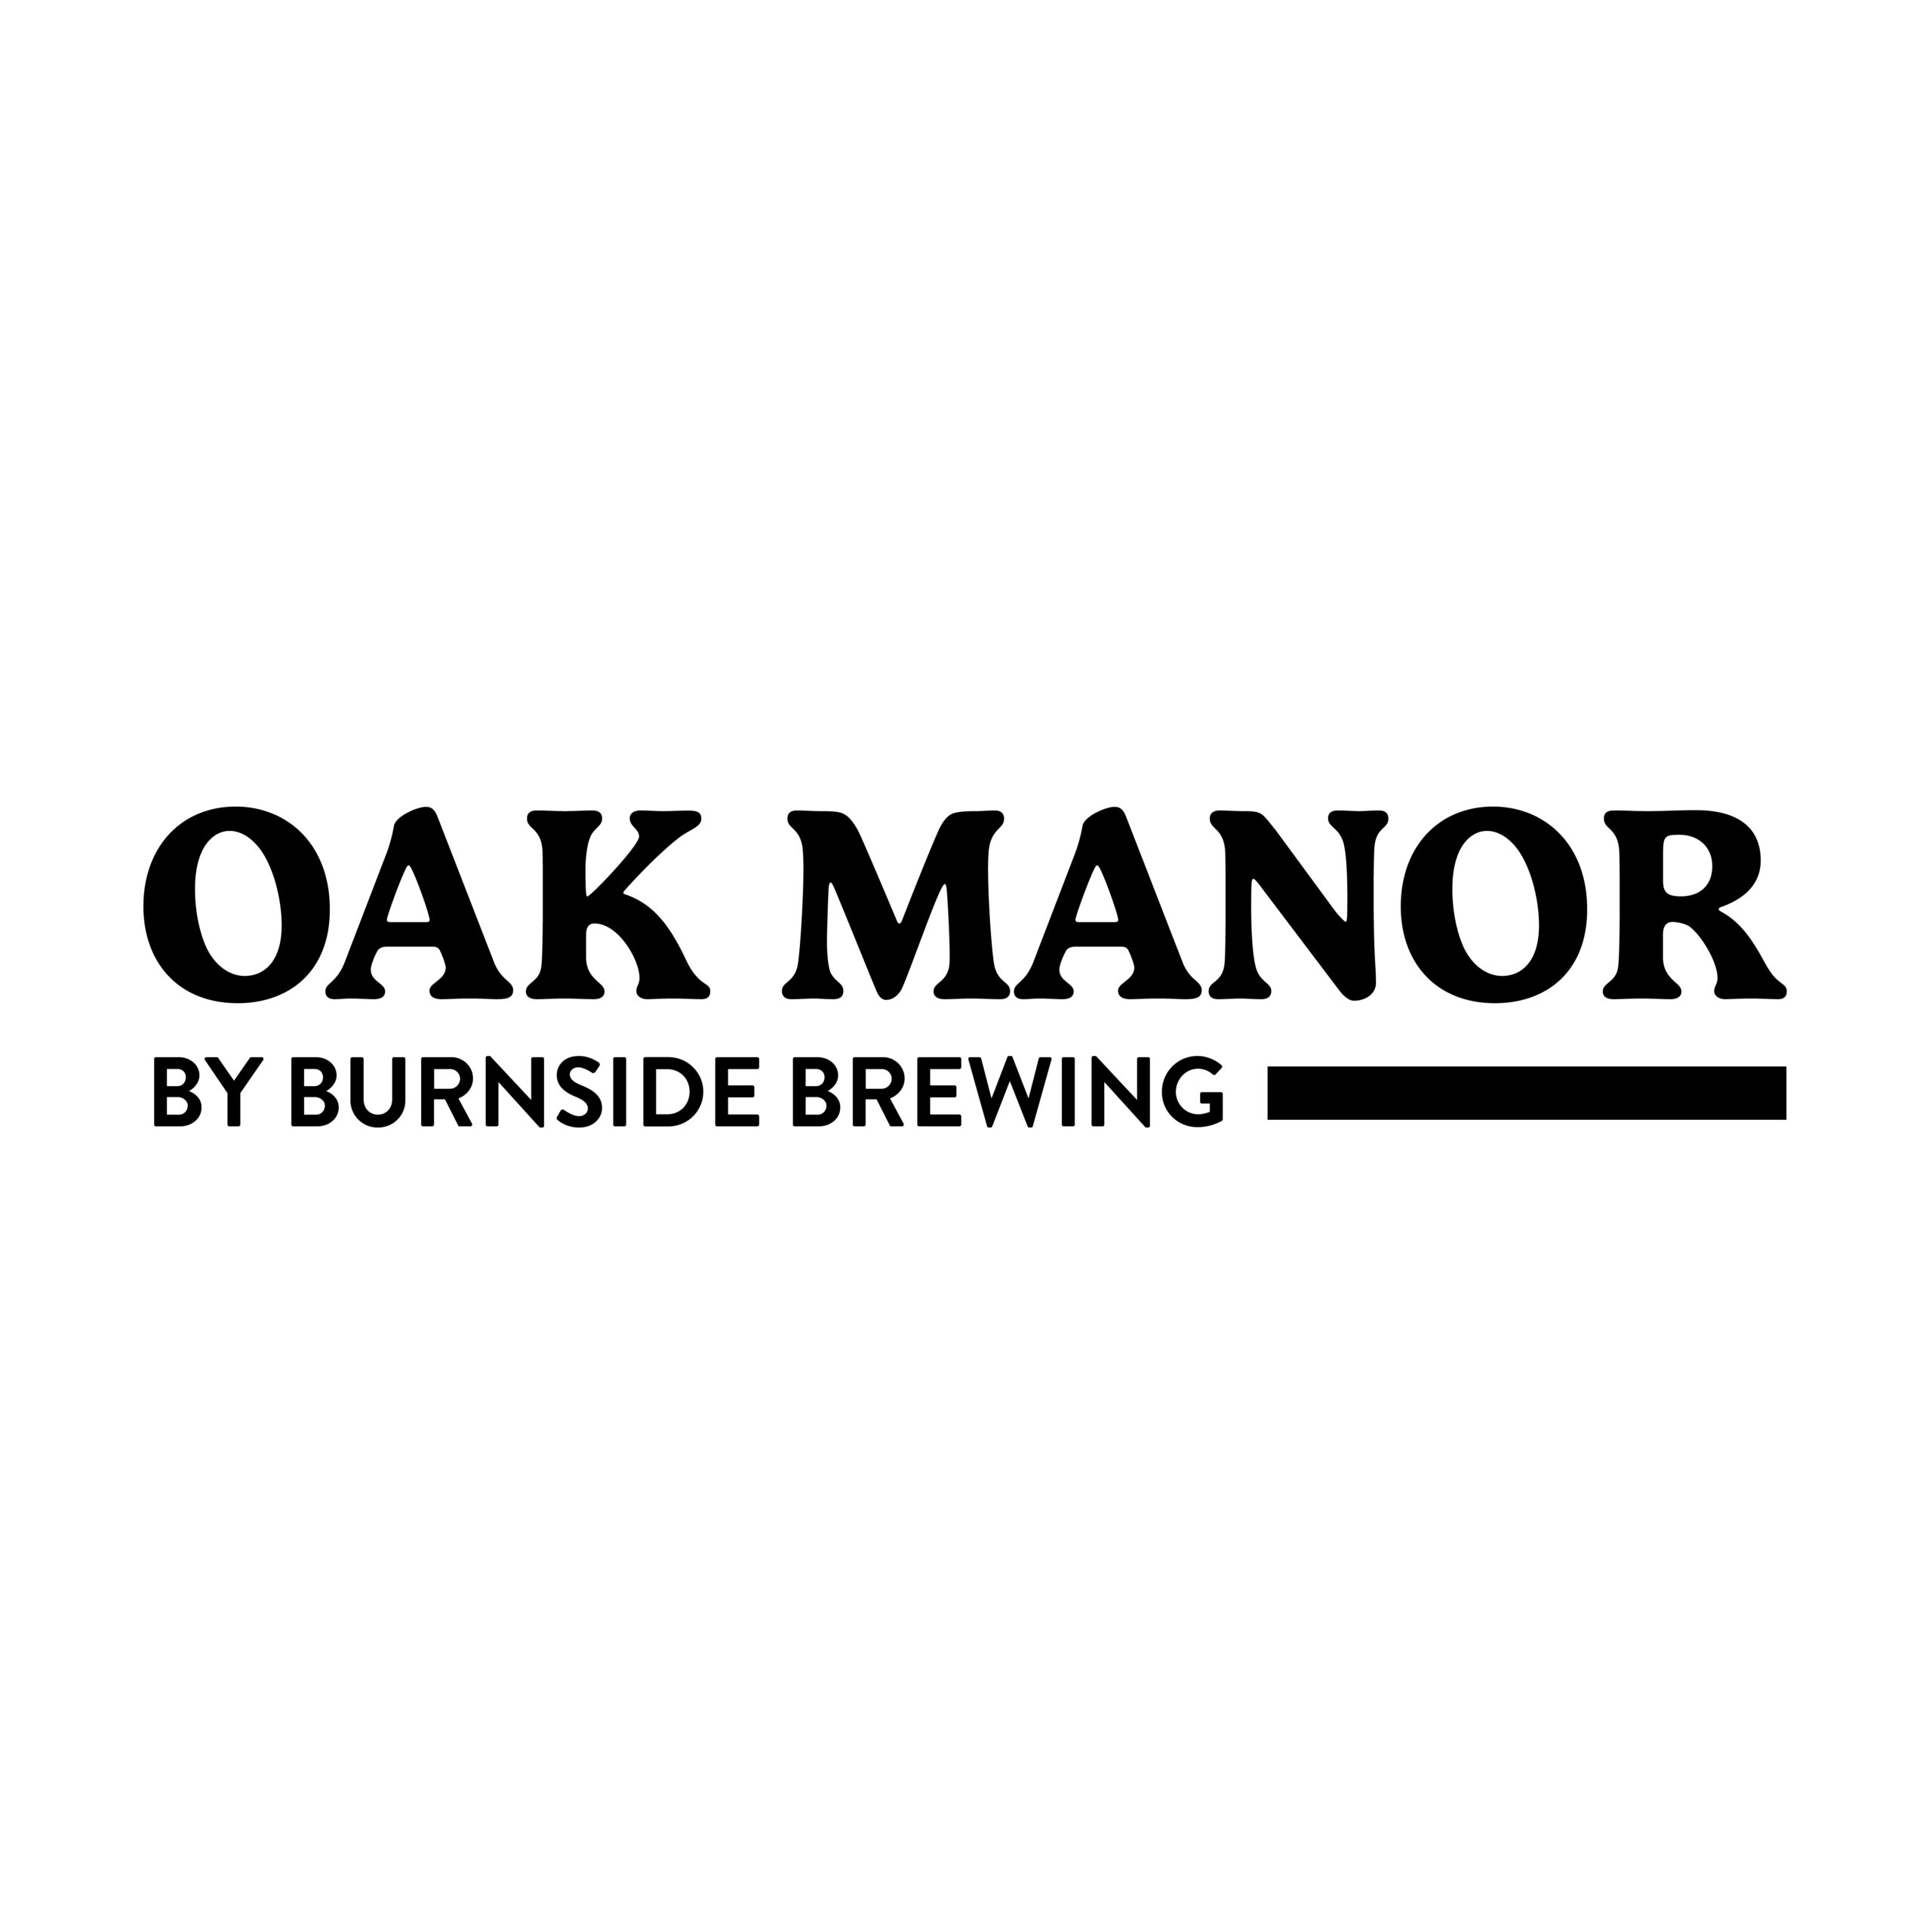 Oak Manor by Burnside Brewing